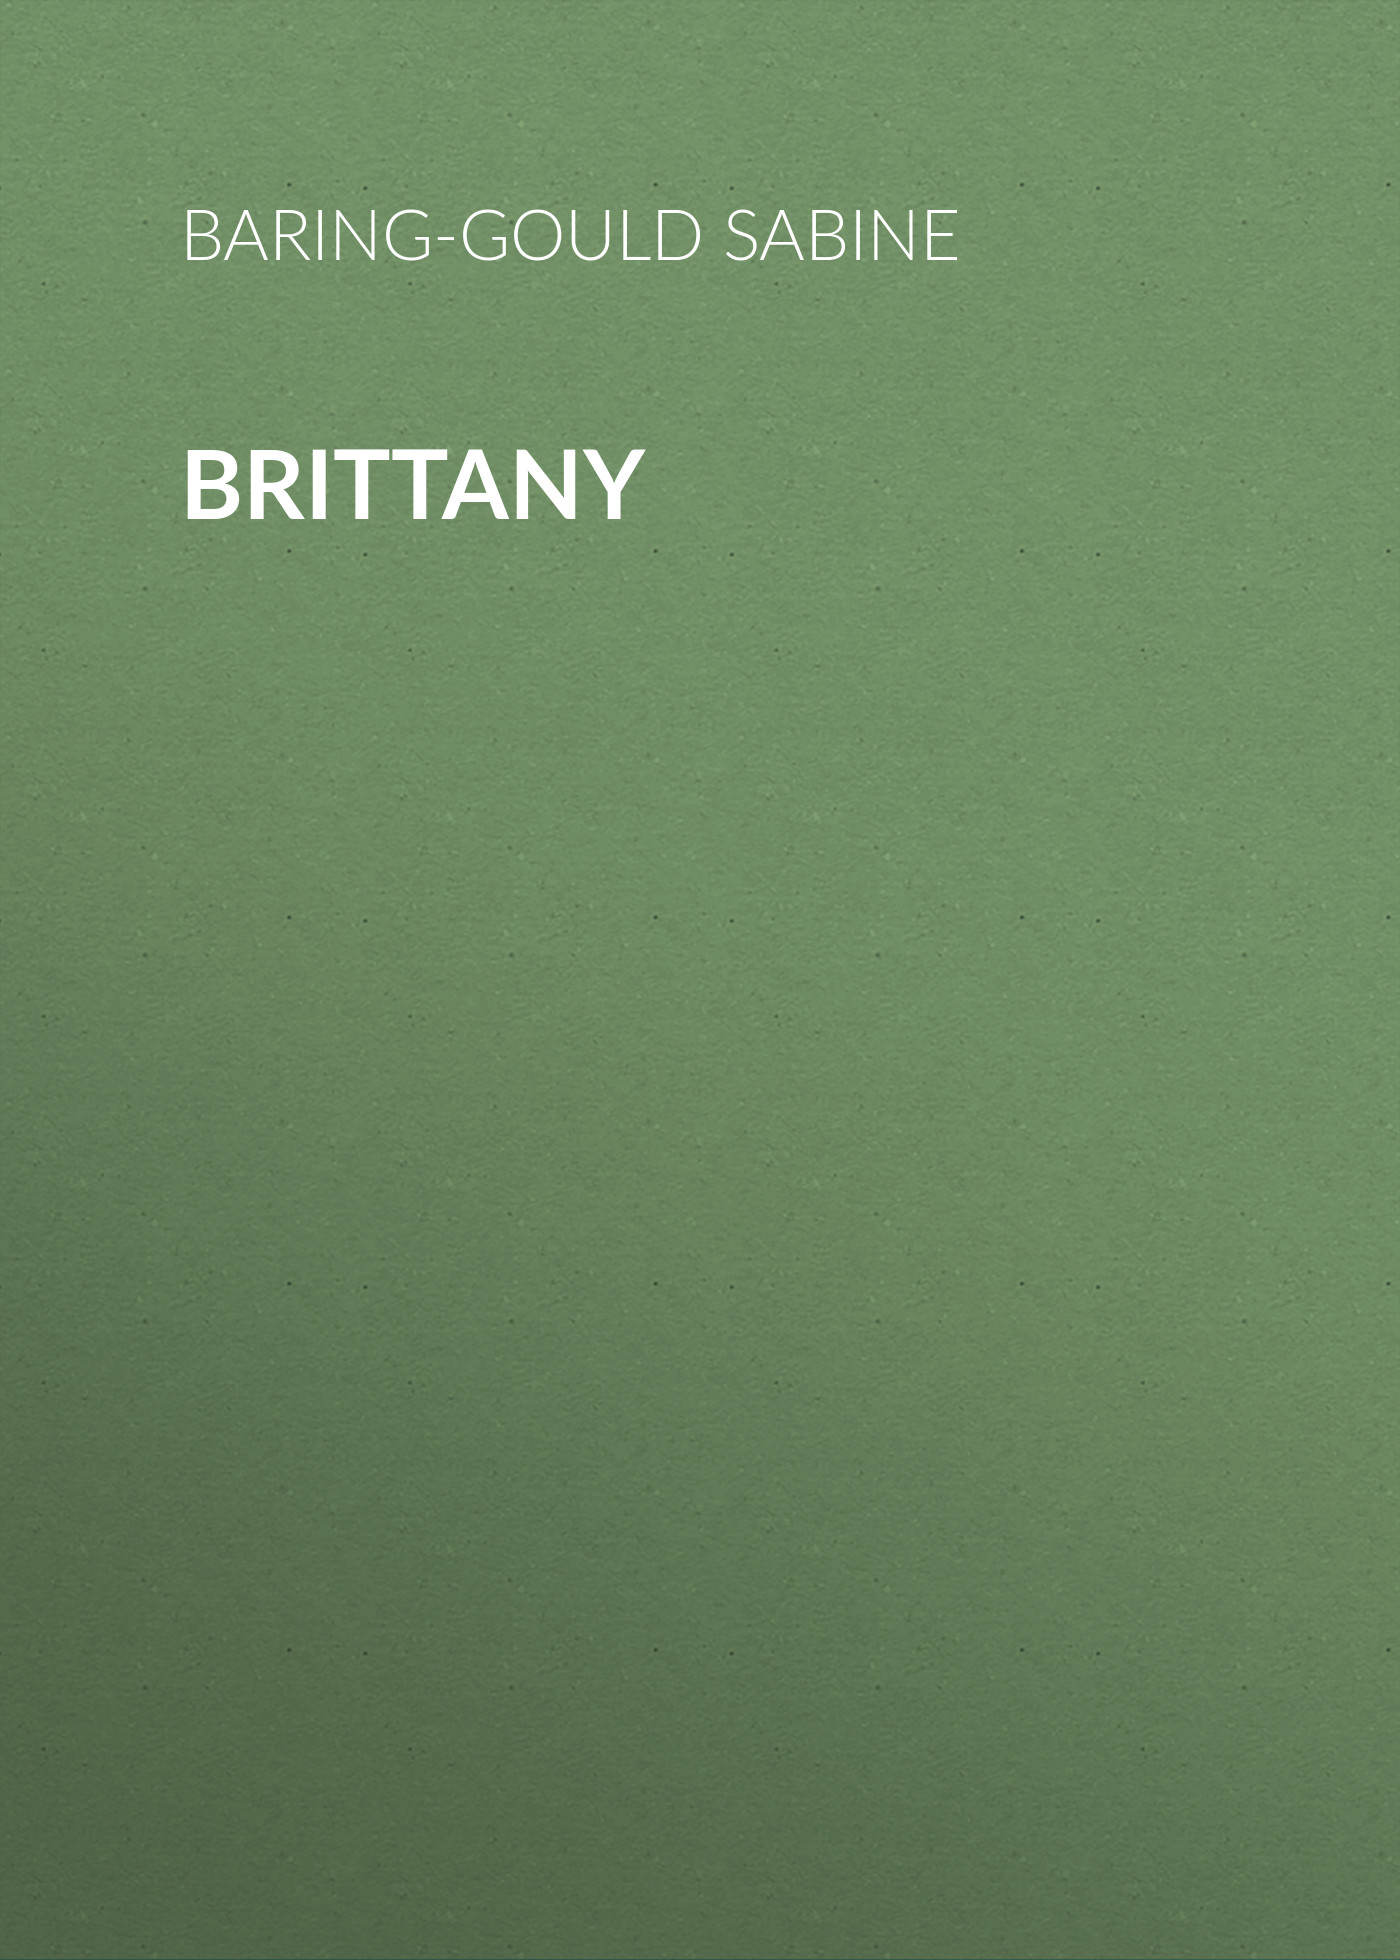 Книга Brittany из серии , созданная Sabine Baring-Gould, может относится к жанру Зарубежная старинная литература, Зарубежная классика. Стоимость электронной книги Brittany с идентификатором 24174428 составляет 0 руб.